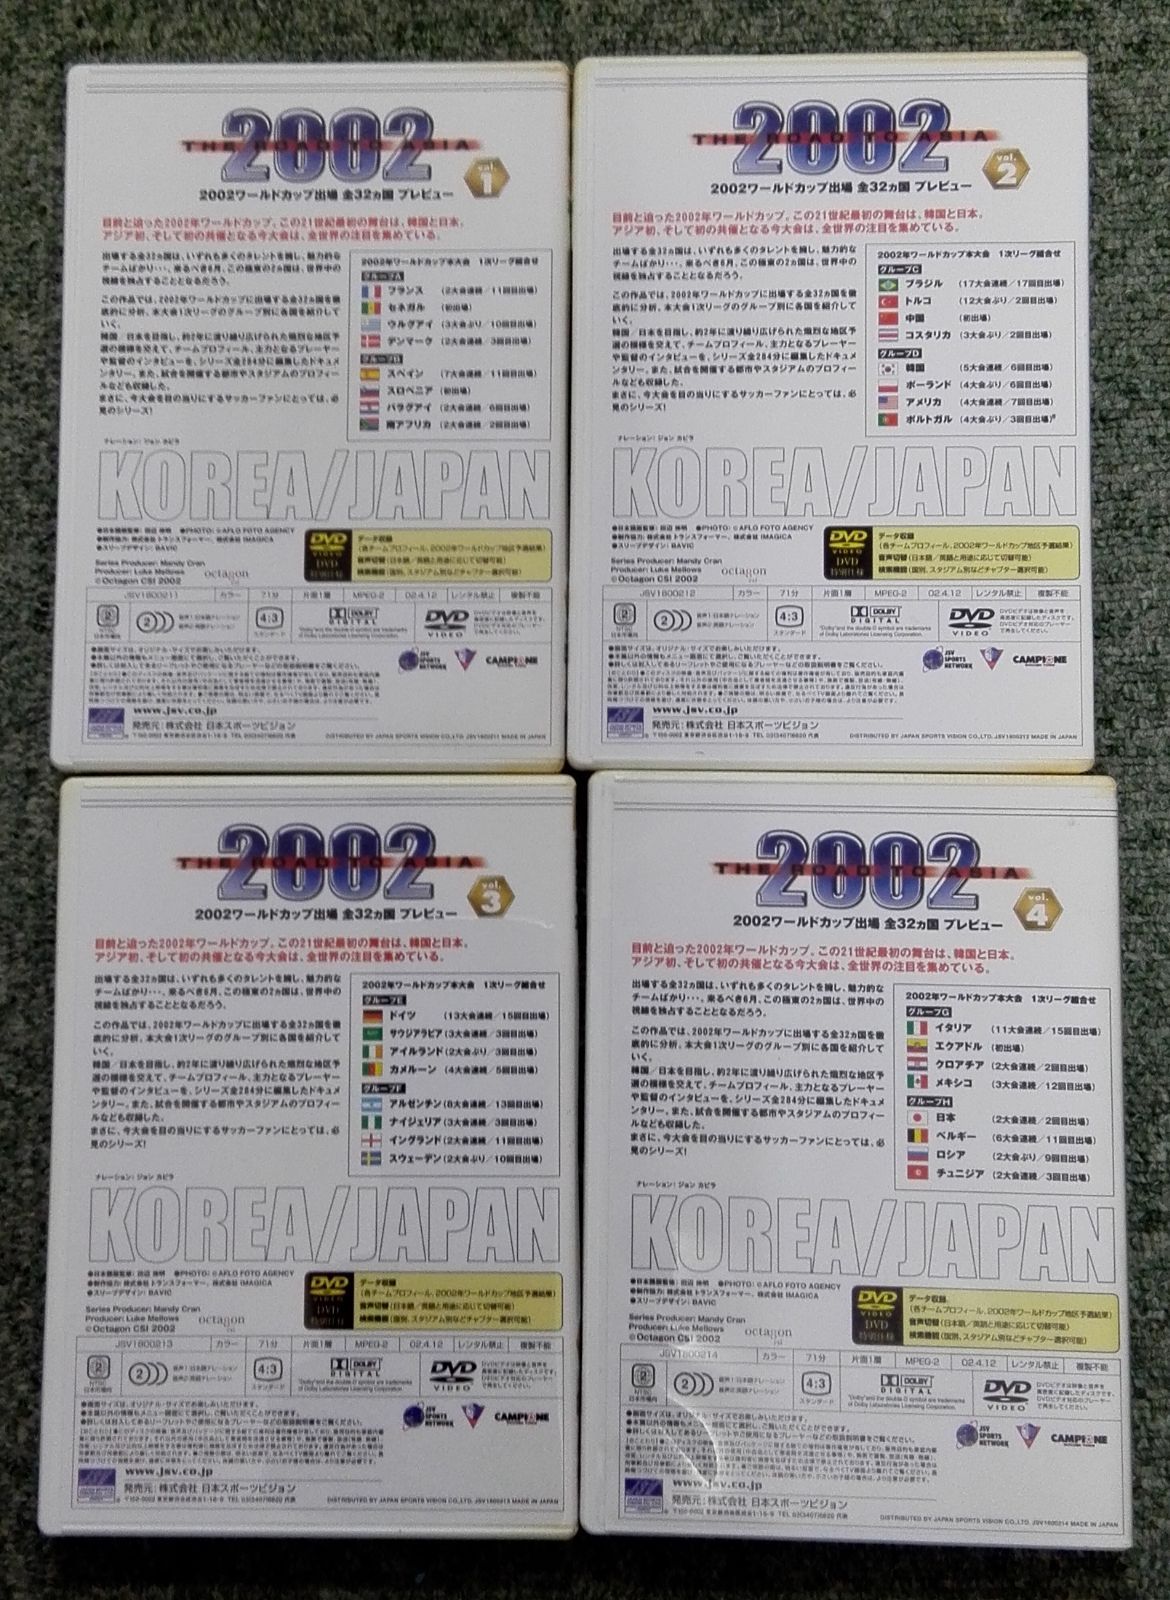 2002ワールドカップ出場全32カ国プレビューDVD SPECIAL BOX - メルカリ